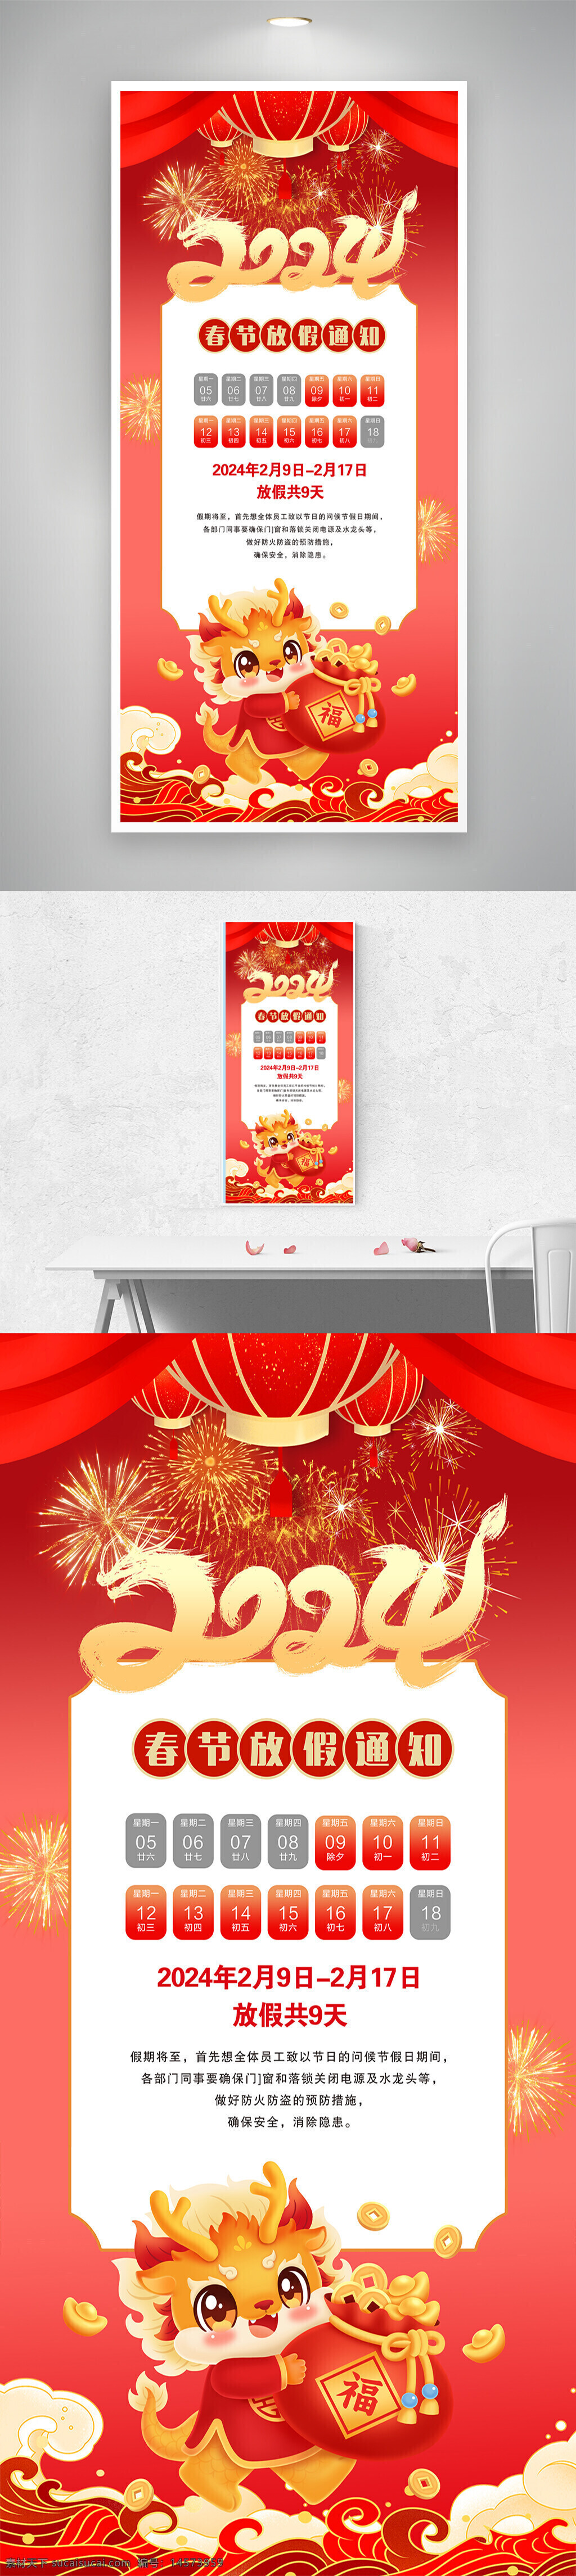 2024 春节 放假 通知 龙年 设计 广告设计